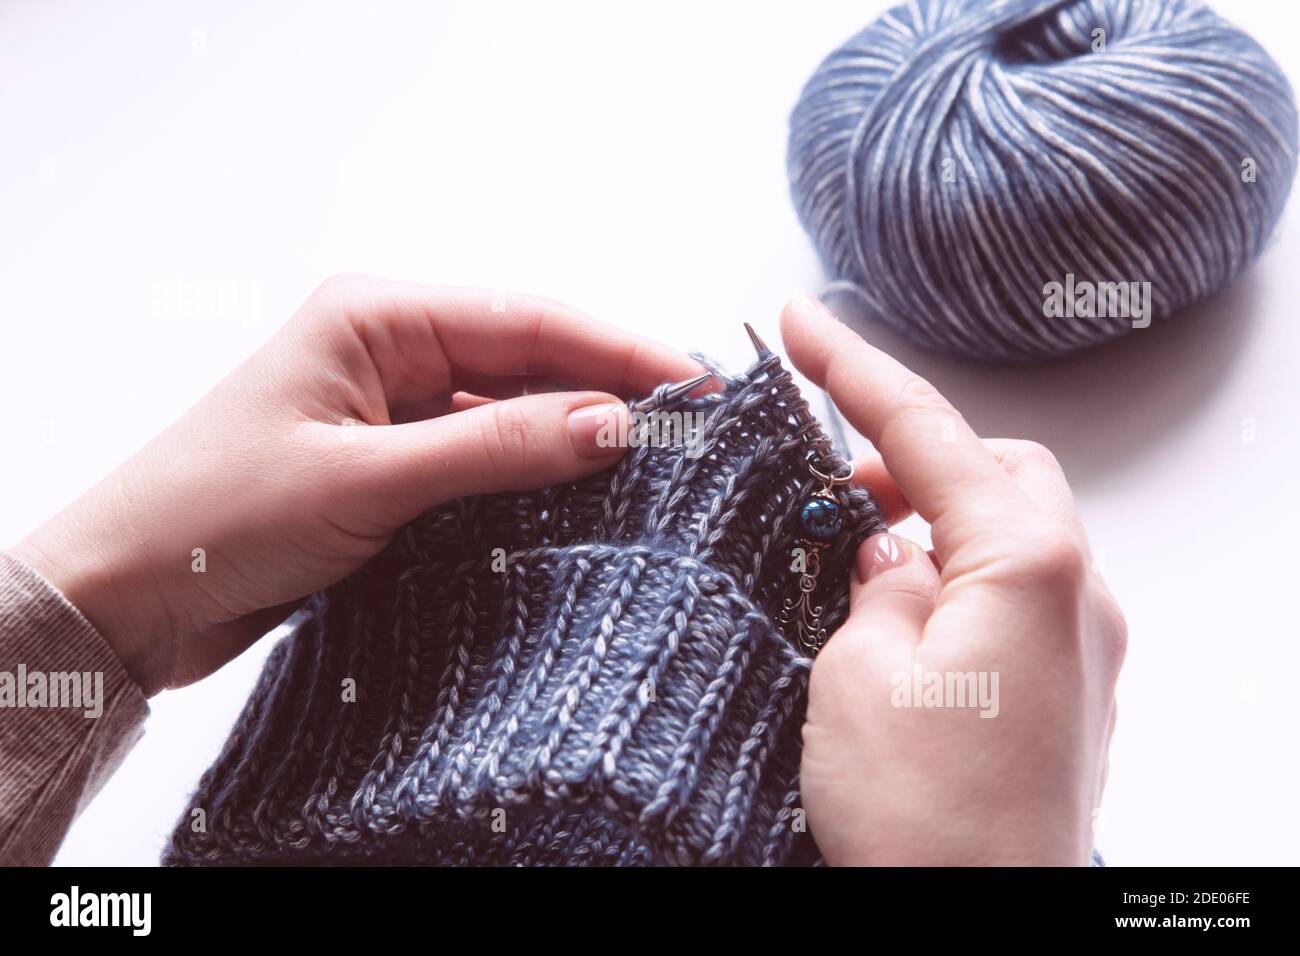 Des mains de femmes avec des aiguilles tricotées pour tricoter le chandail violet de laine sur fond blanc. Femme tricotage de vêtements en laine. Vue aérienne. Revenus de l'artisanat Banque D'Images